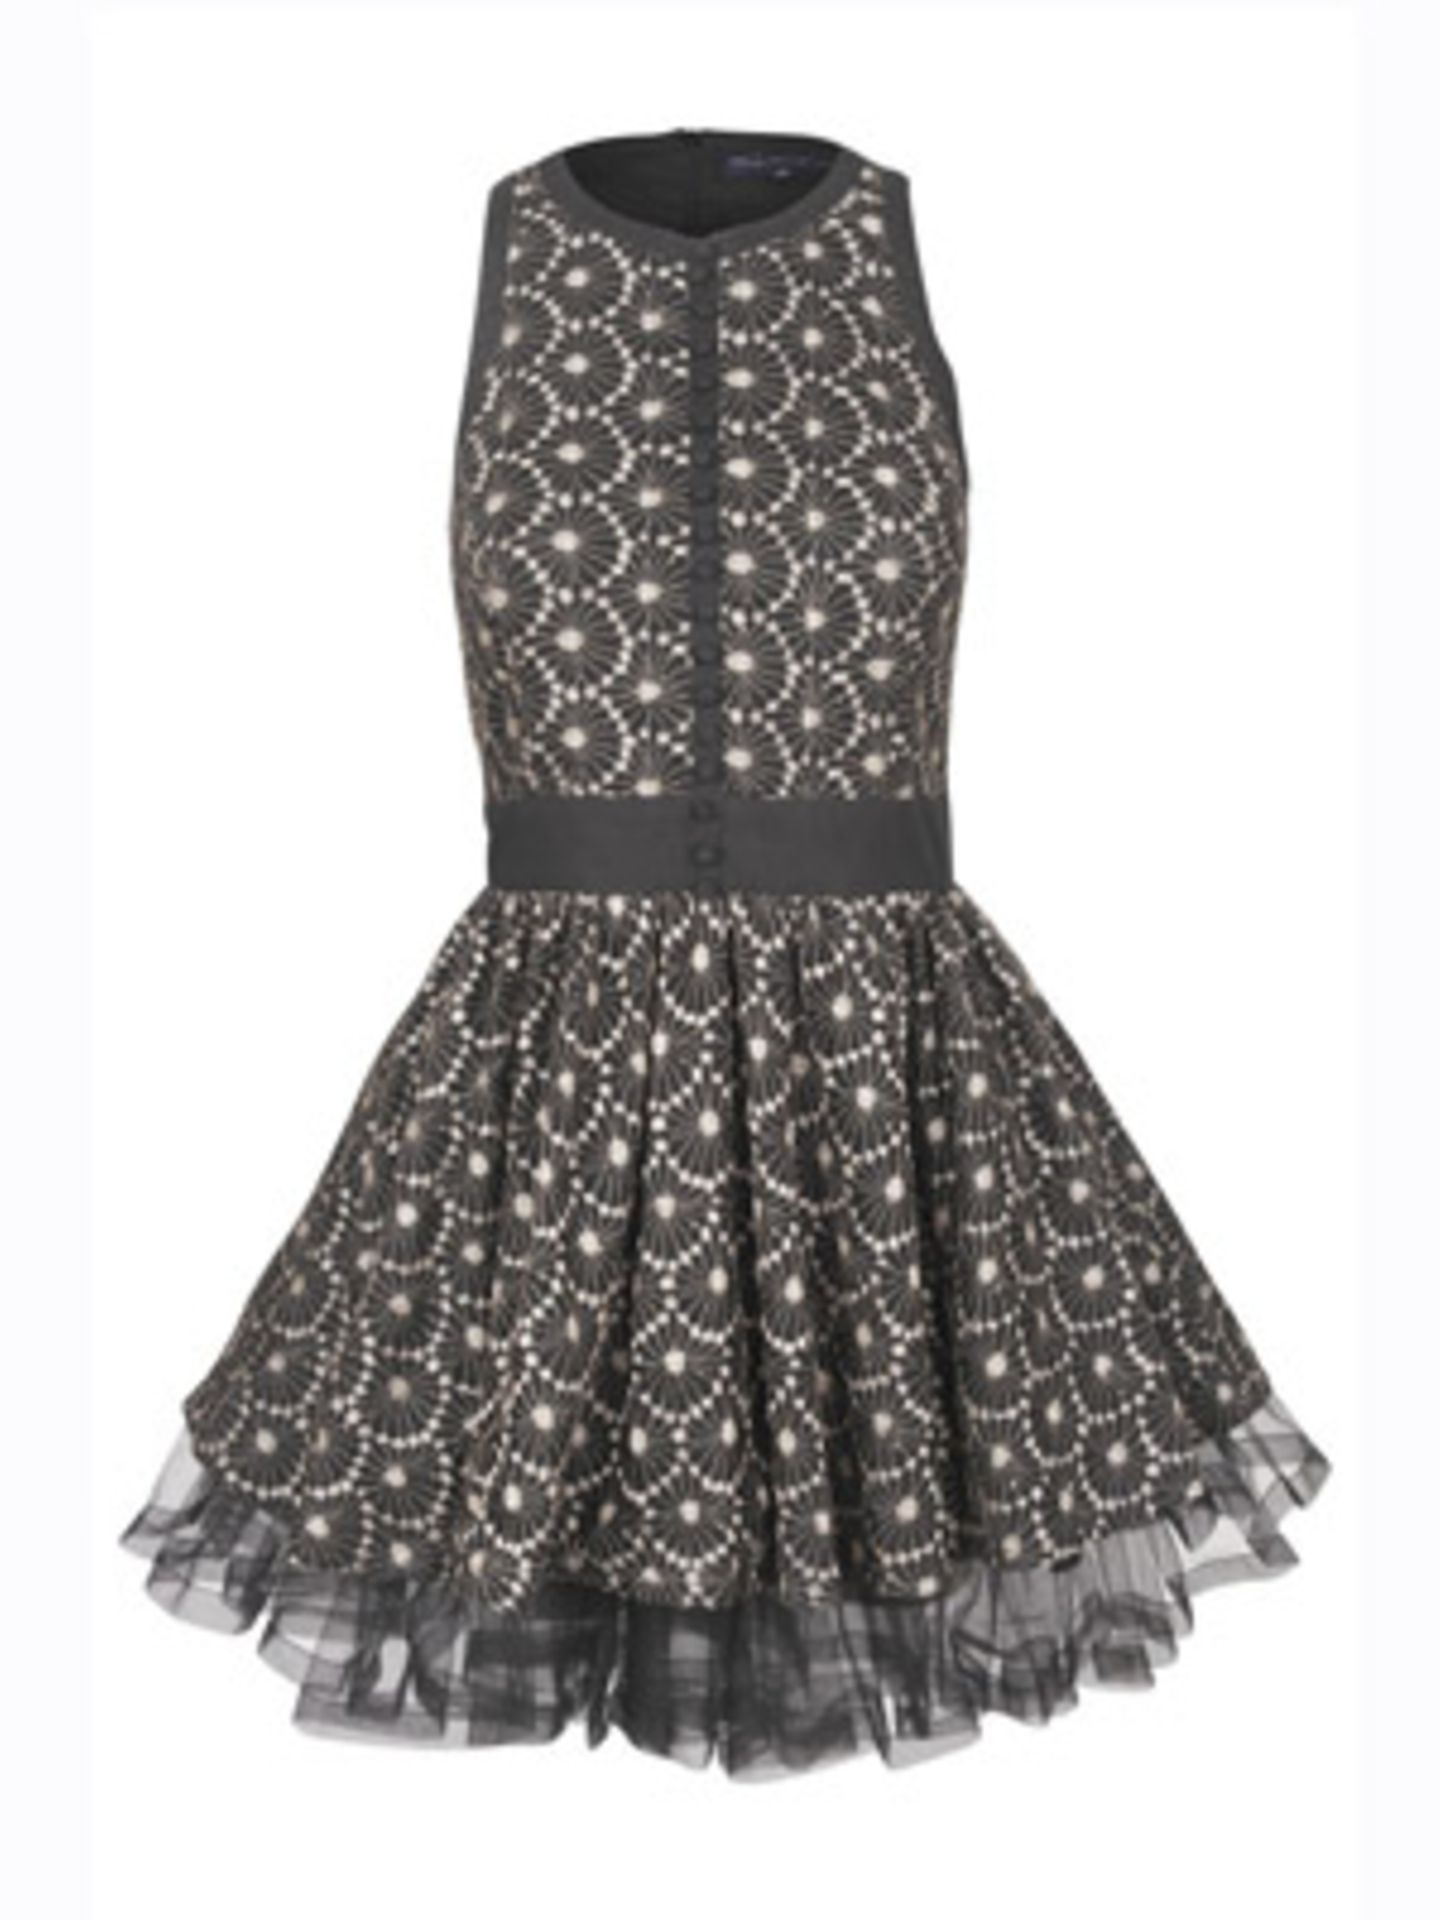 Ärmelloses Kleid im 60er-Stil mit Knopfleiste und Tüll von French Connection, um 180 Euro.